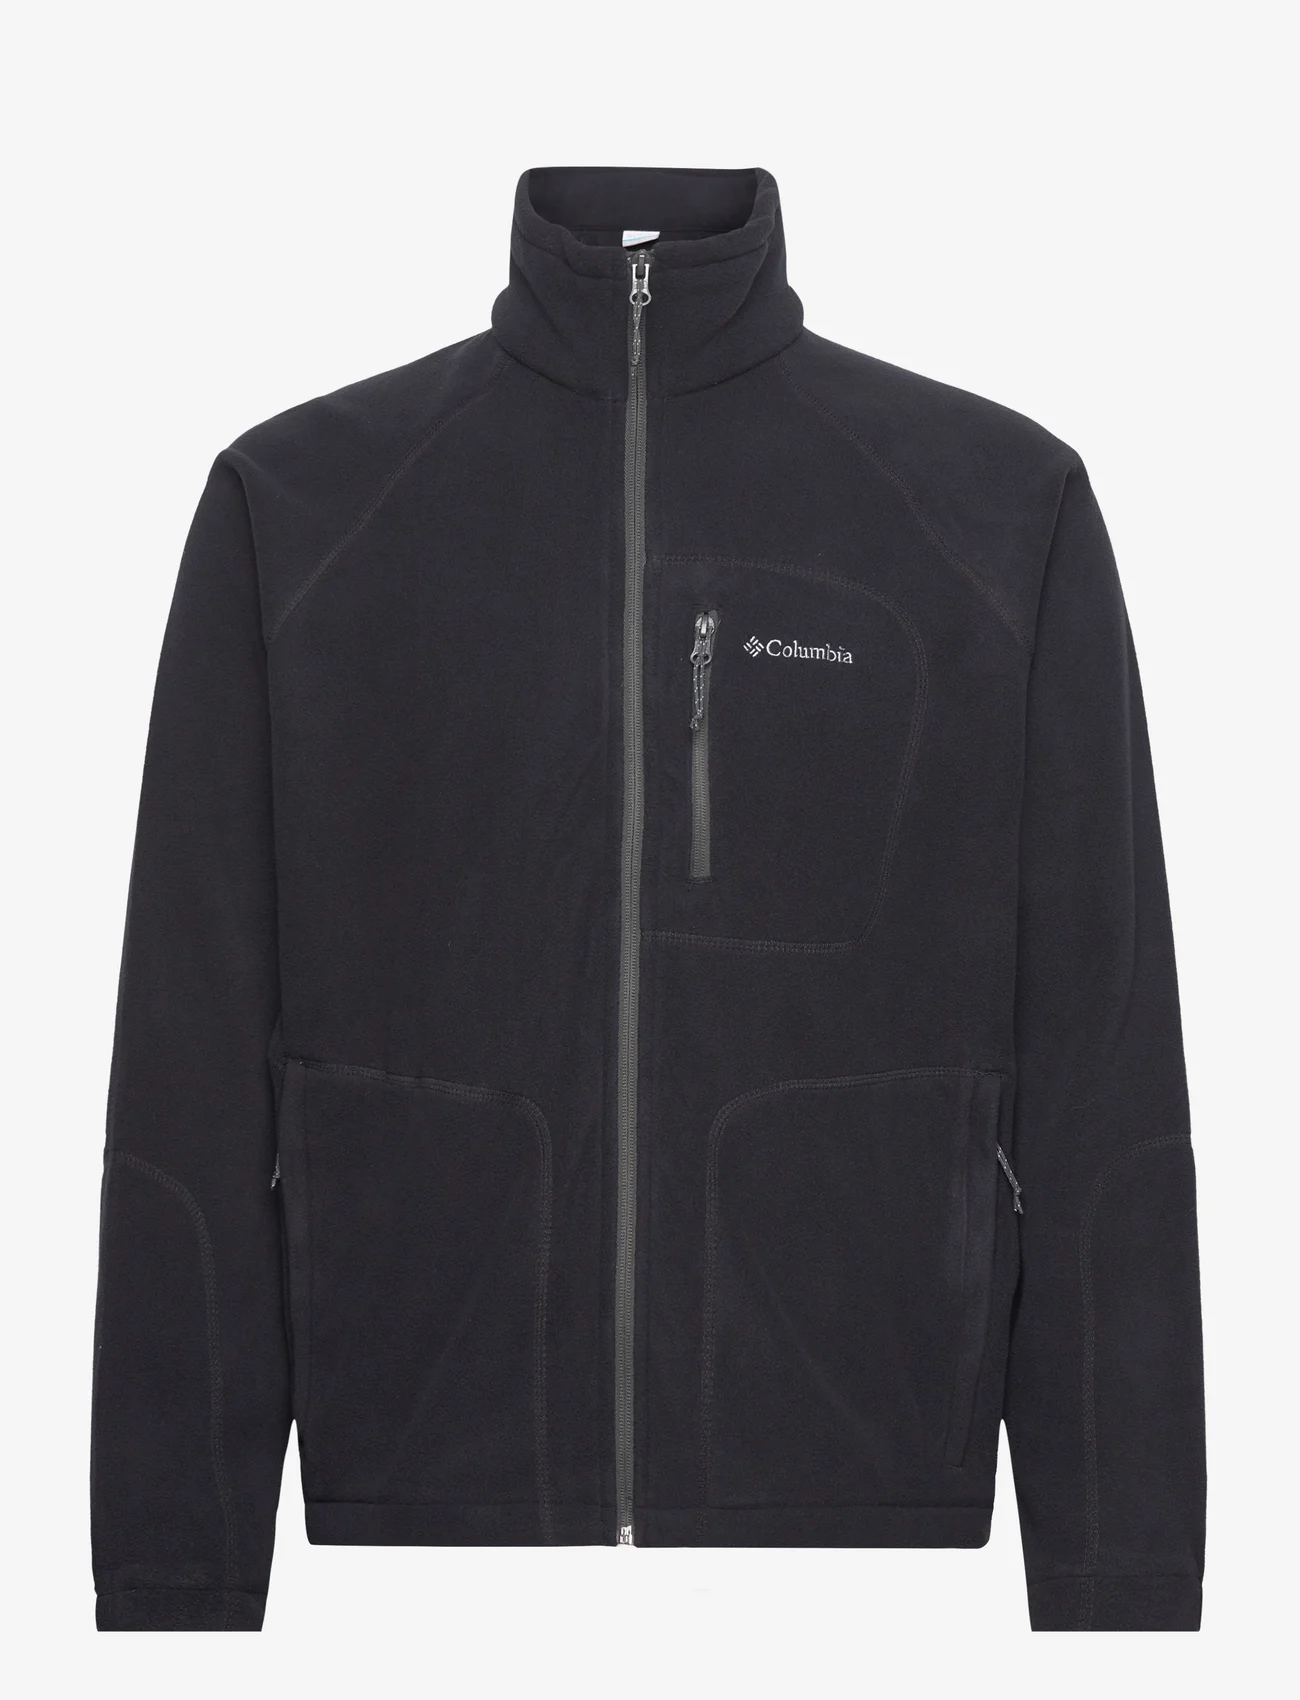 Columbia Sportswear - Fast Trek II Full Zip Fleece - midlayer-jakker - black - 0